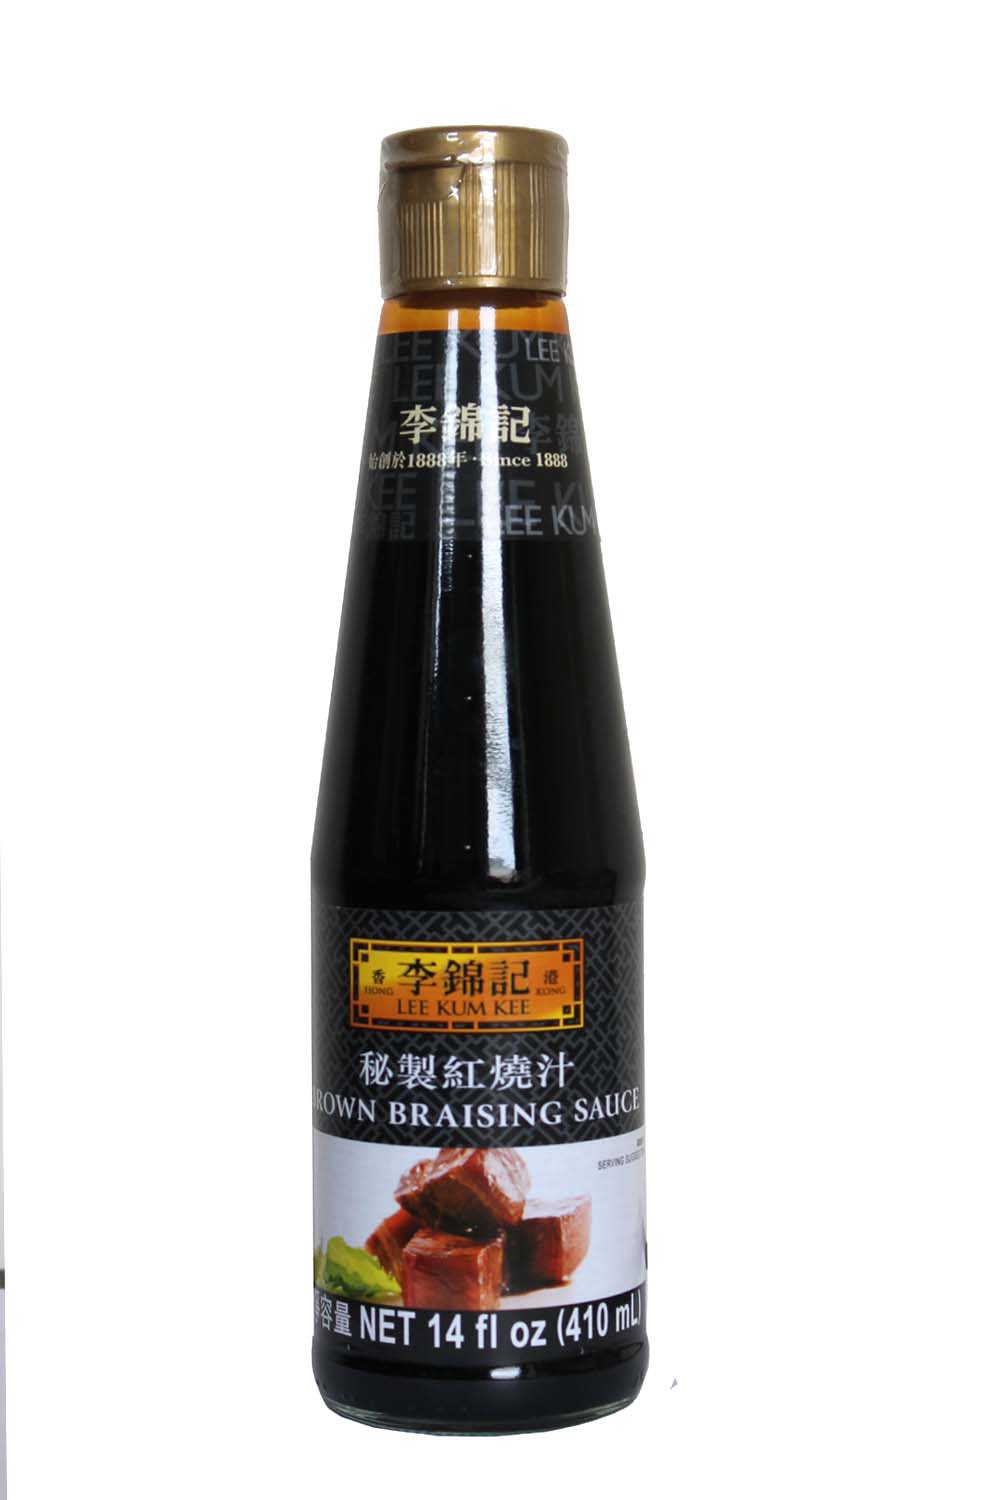 Lee Kum Kee Brown Braising Sauce – itemroot